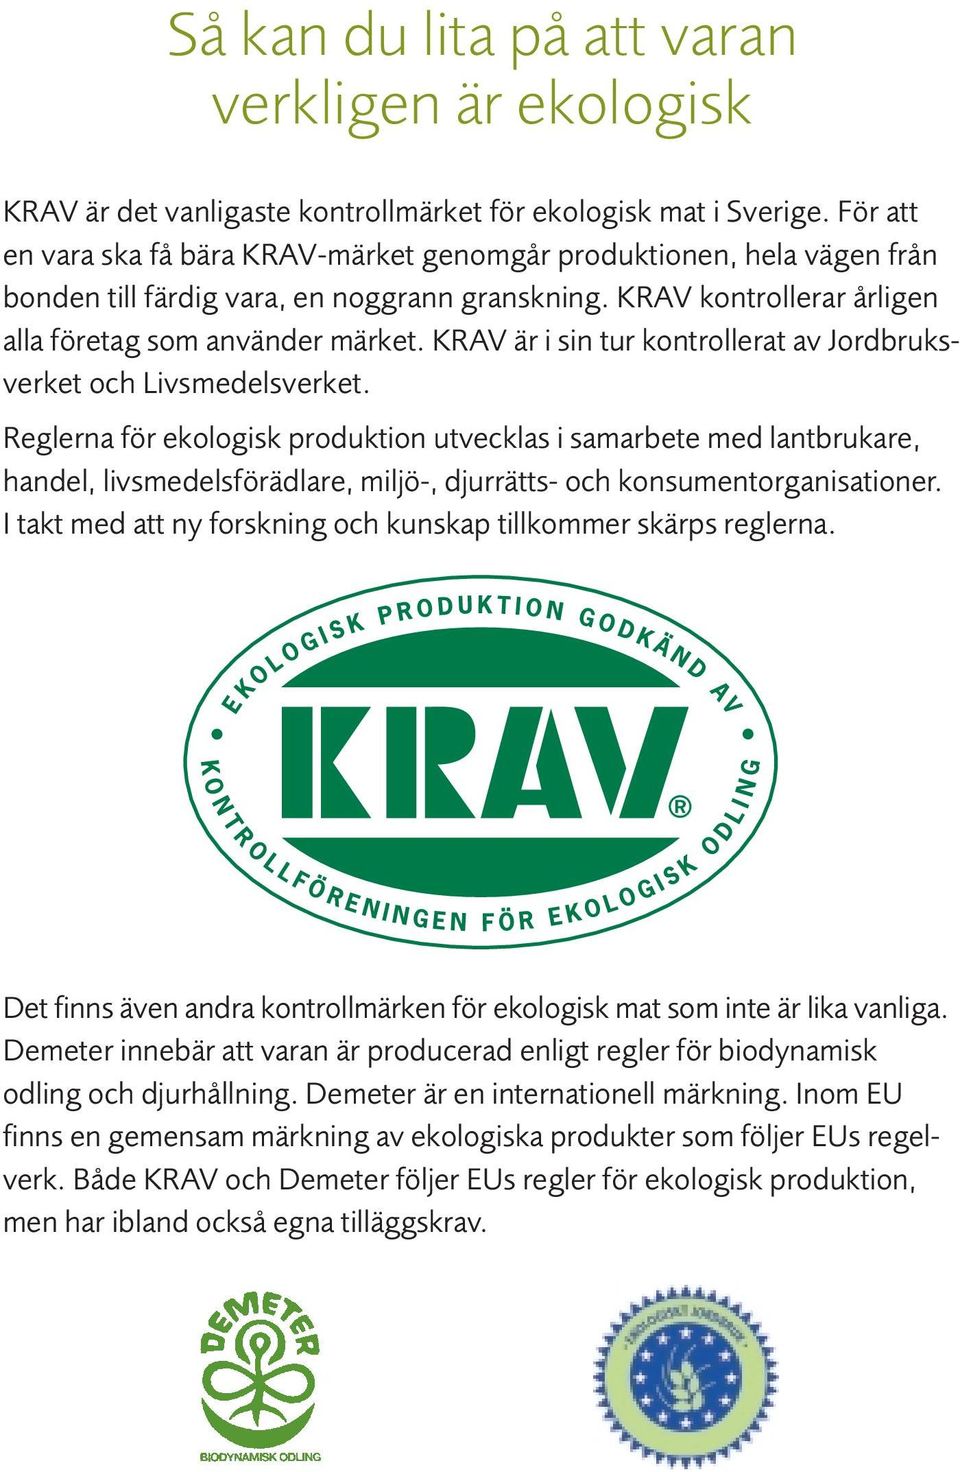 KRAV är i sin tur kontrollerat av Jordbruksverket och Livsmedelsverket.